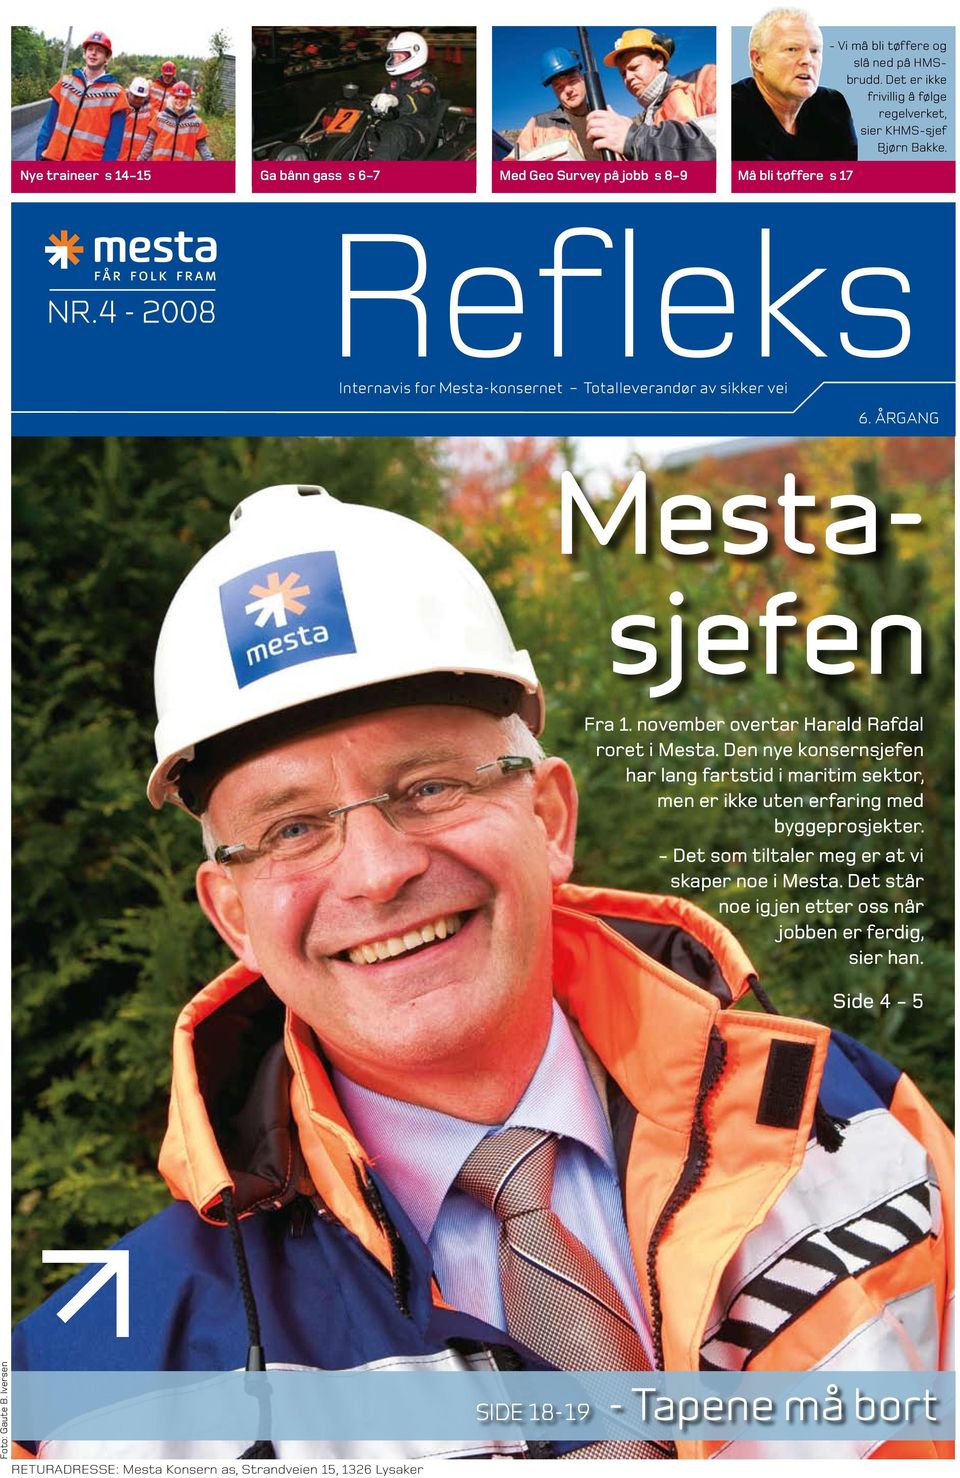 november overtar Harald Rafdal roret i Mesta. Den nye konsernsjefen har lang fartstid i maritim sektor, men er ikke uten erfaring med byggeprosjekter.